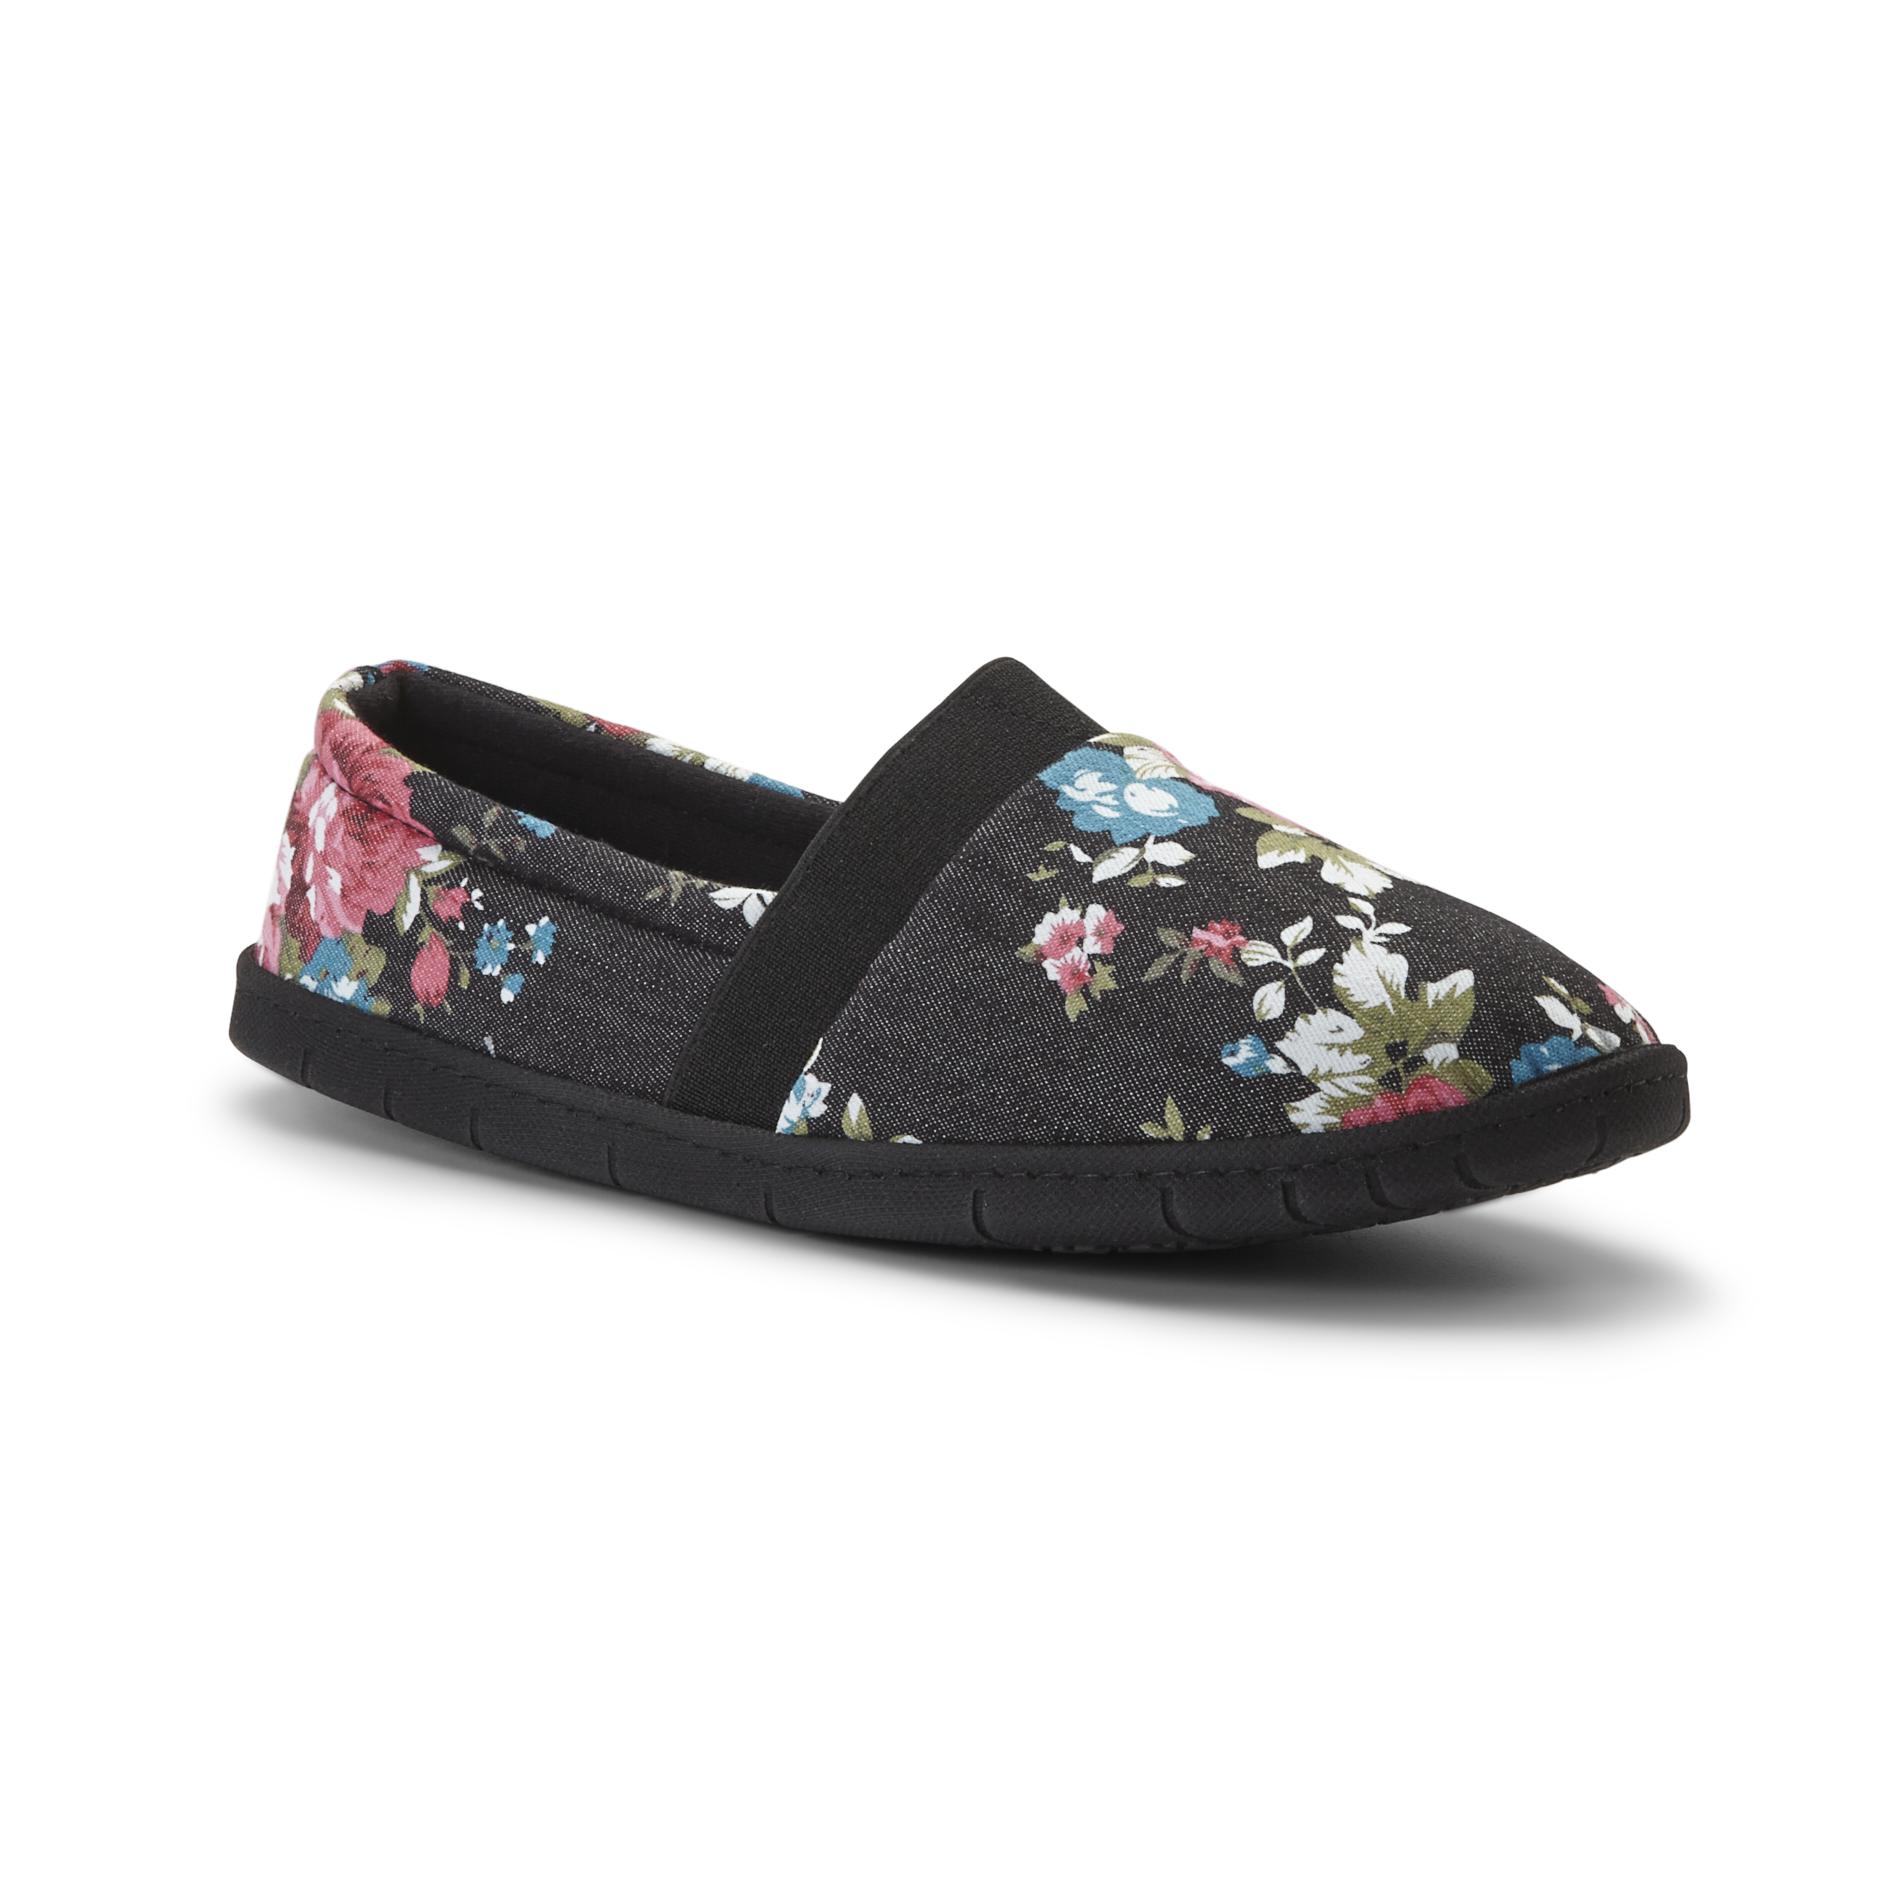 Dearfoams Women's Slipper Shoes - Floral